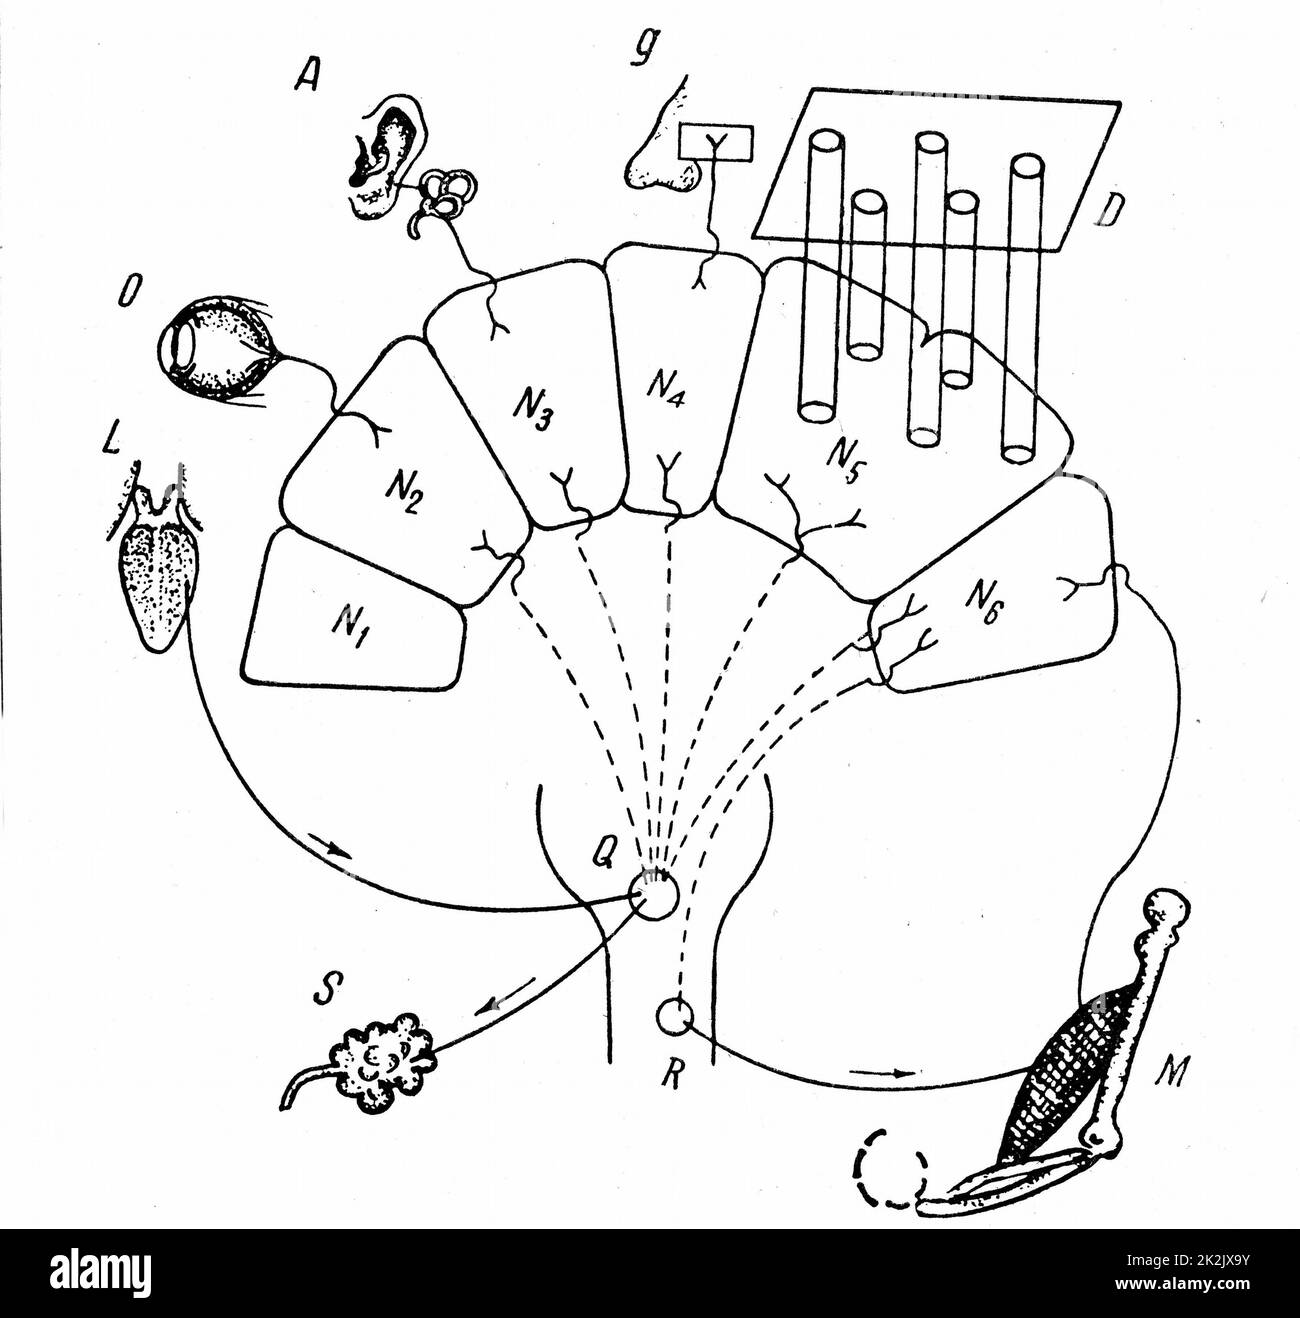 Diagramm von Pawlows Befunden über konditionierten Speichelreflex. D Berührungs- und Temperaturorgan; N 1-6-Analysatoren; S-Speicheldrüse; Q-Speichelsezernenzentrum in Medulla oblongata; M-Muskel; R-motorisches Zentrum im Rückenmark 1890 Stockfoto